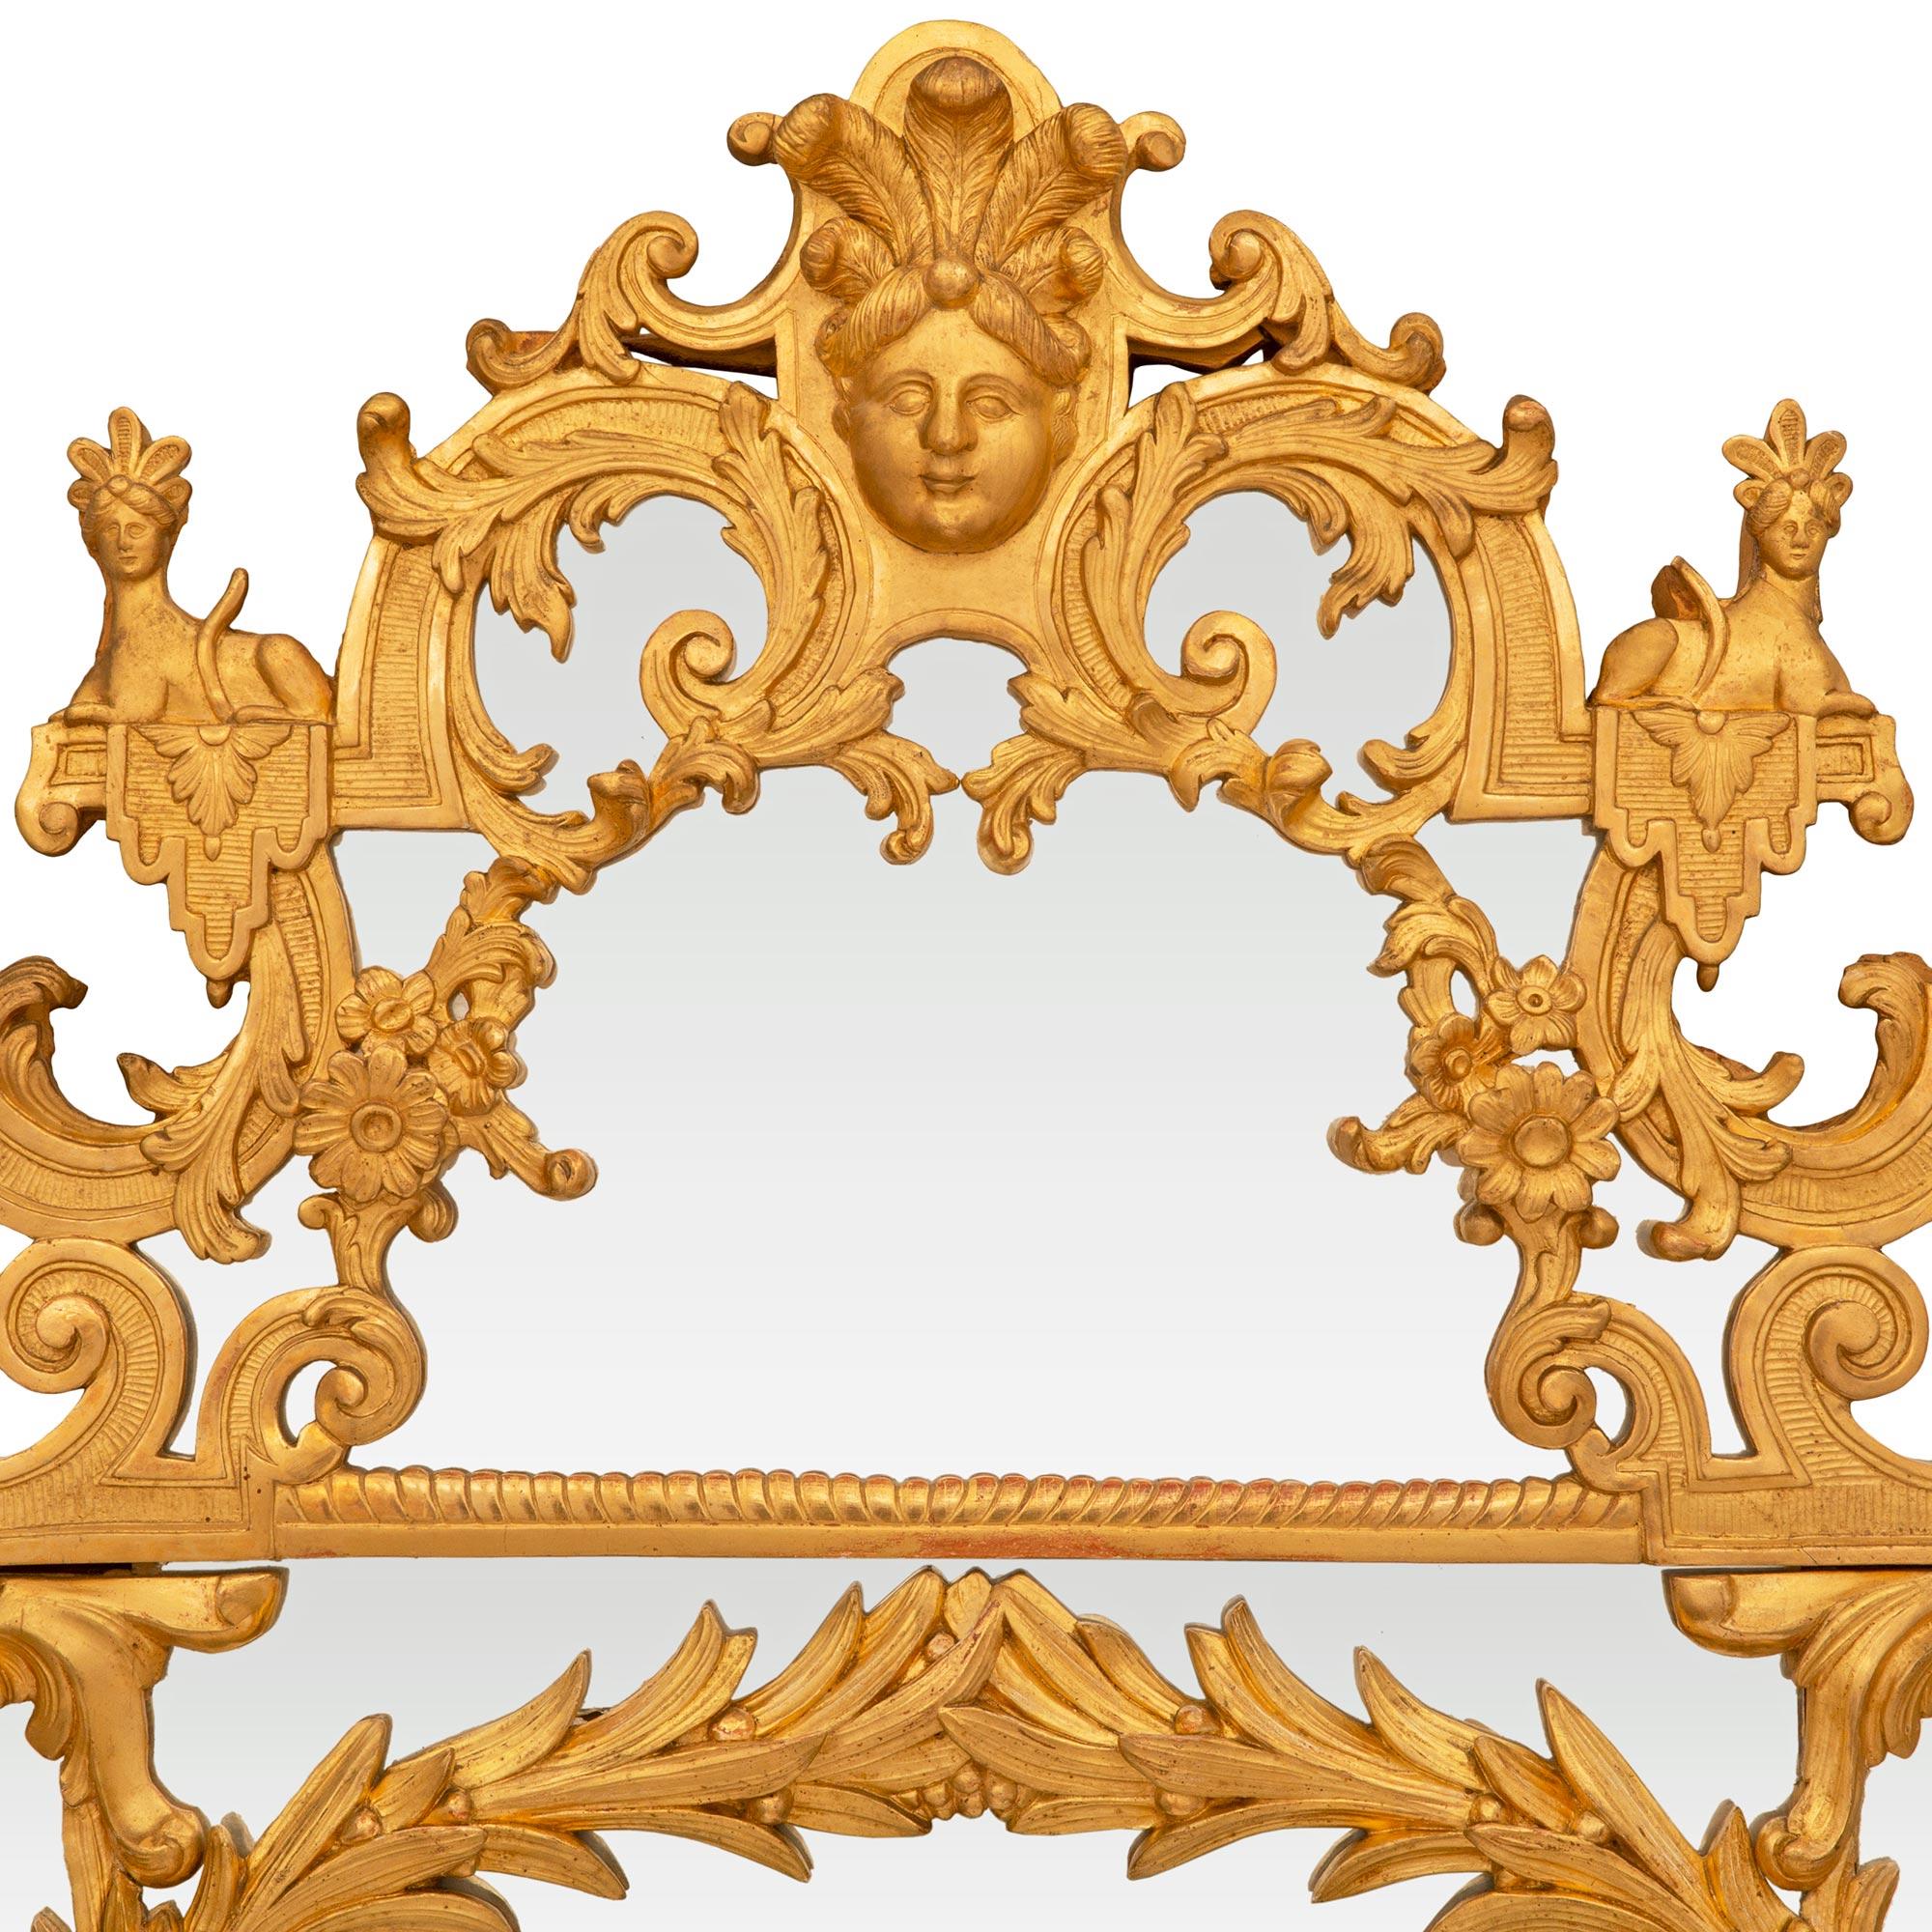 Superbe miroir en bois doré de la période Régence du XVIIIe siècle. Le miroir à double encadrement est décoré d'opulentes volutes et feuilles en bois doré. Au sommet, on trouve des masques de théâtre au milieu de rinceaux, de guirlandes et de